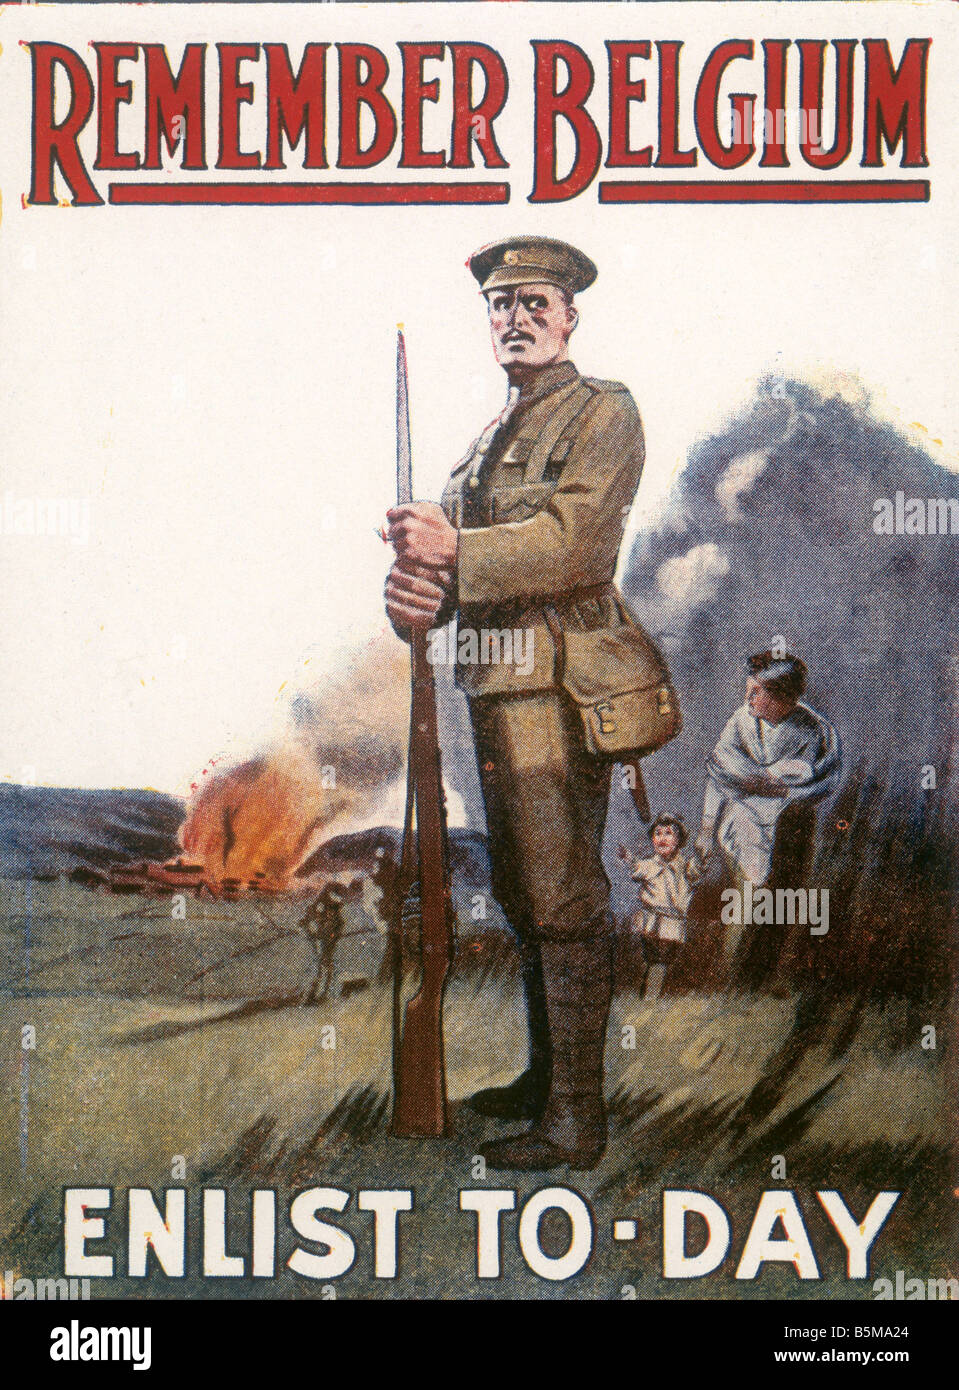 2 G55 P1 1915 124 WW1 Propaganda Recuerde Bélgica Historia Primera Guerra Mundial la propaganda recuerde Bélgica alistarse al día, llame a elist Foto de stock